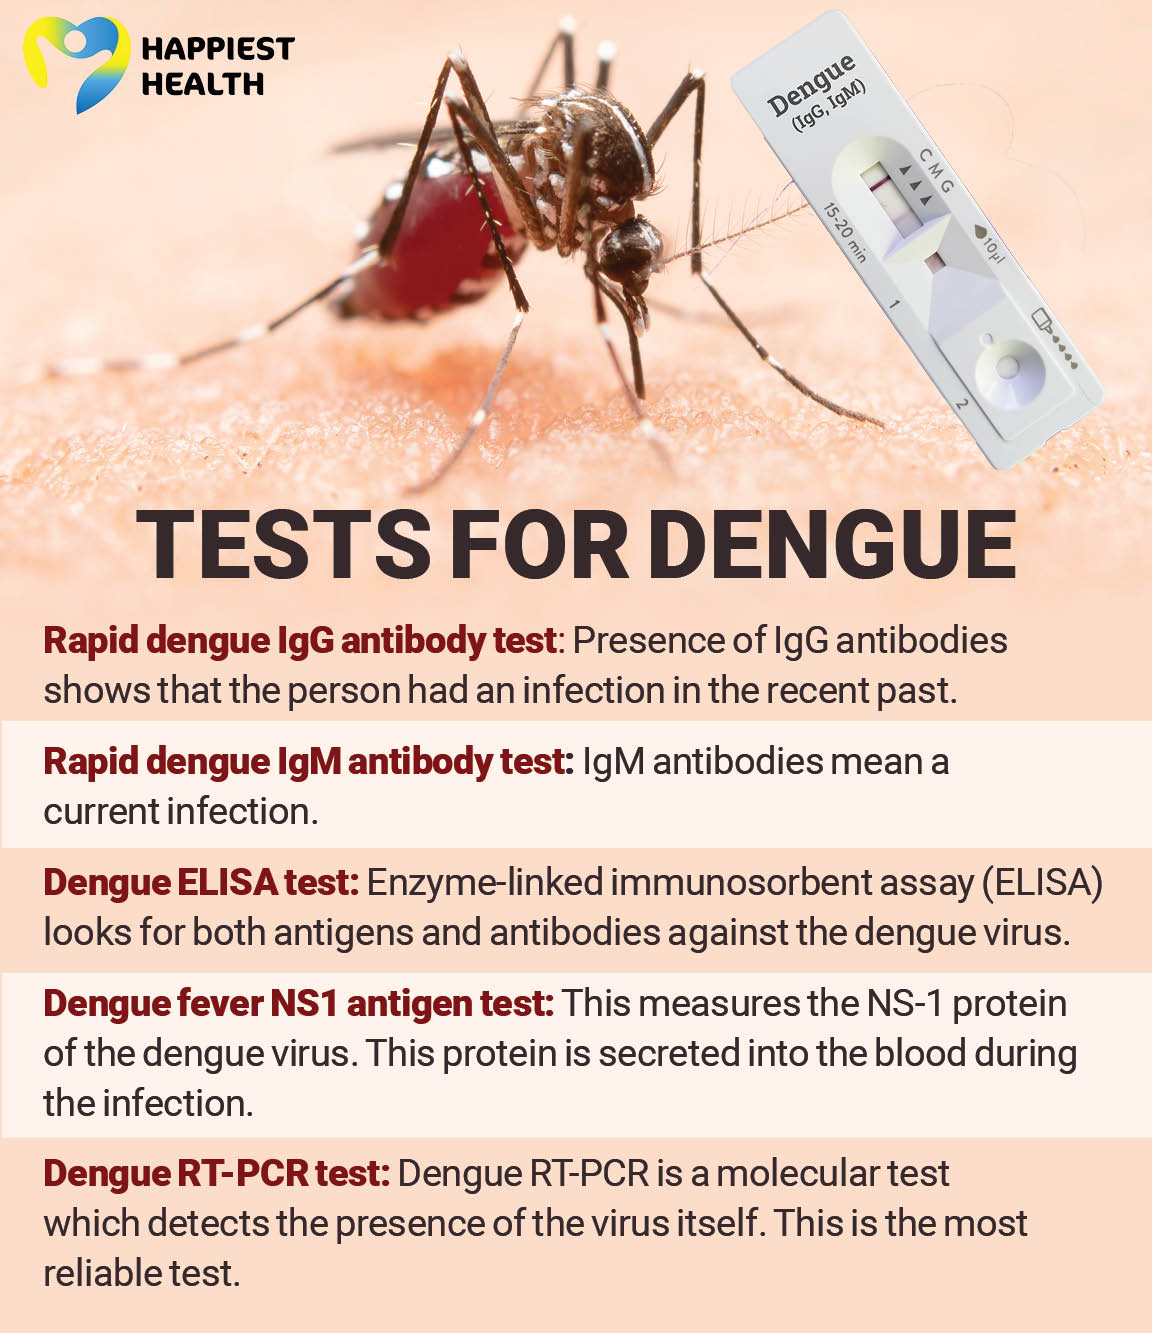 Tests for dengue